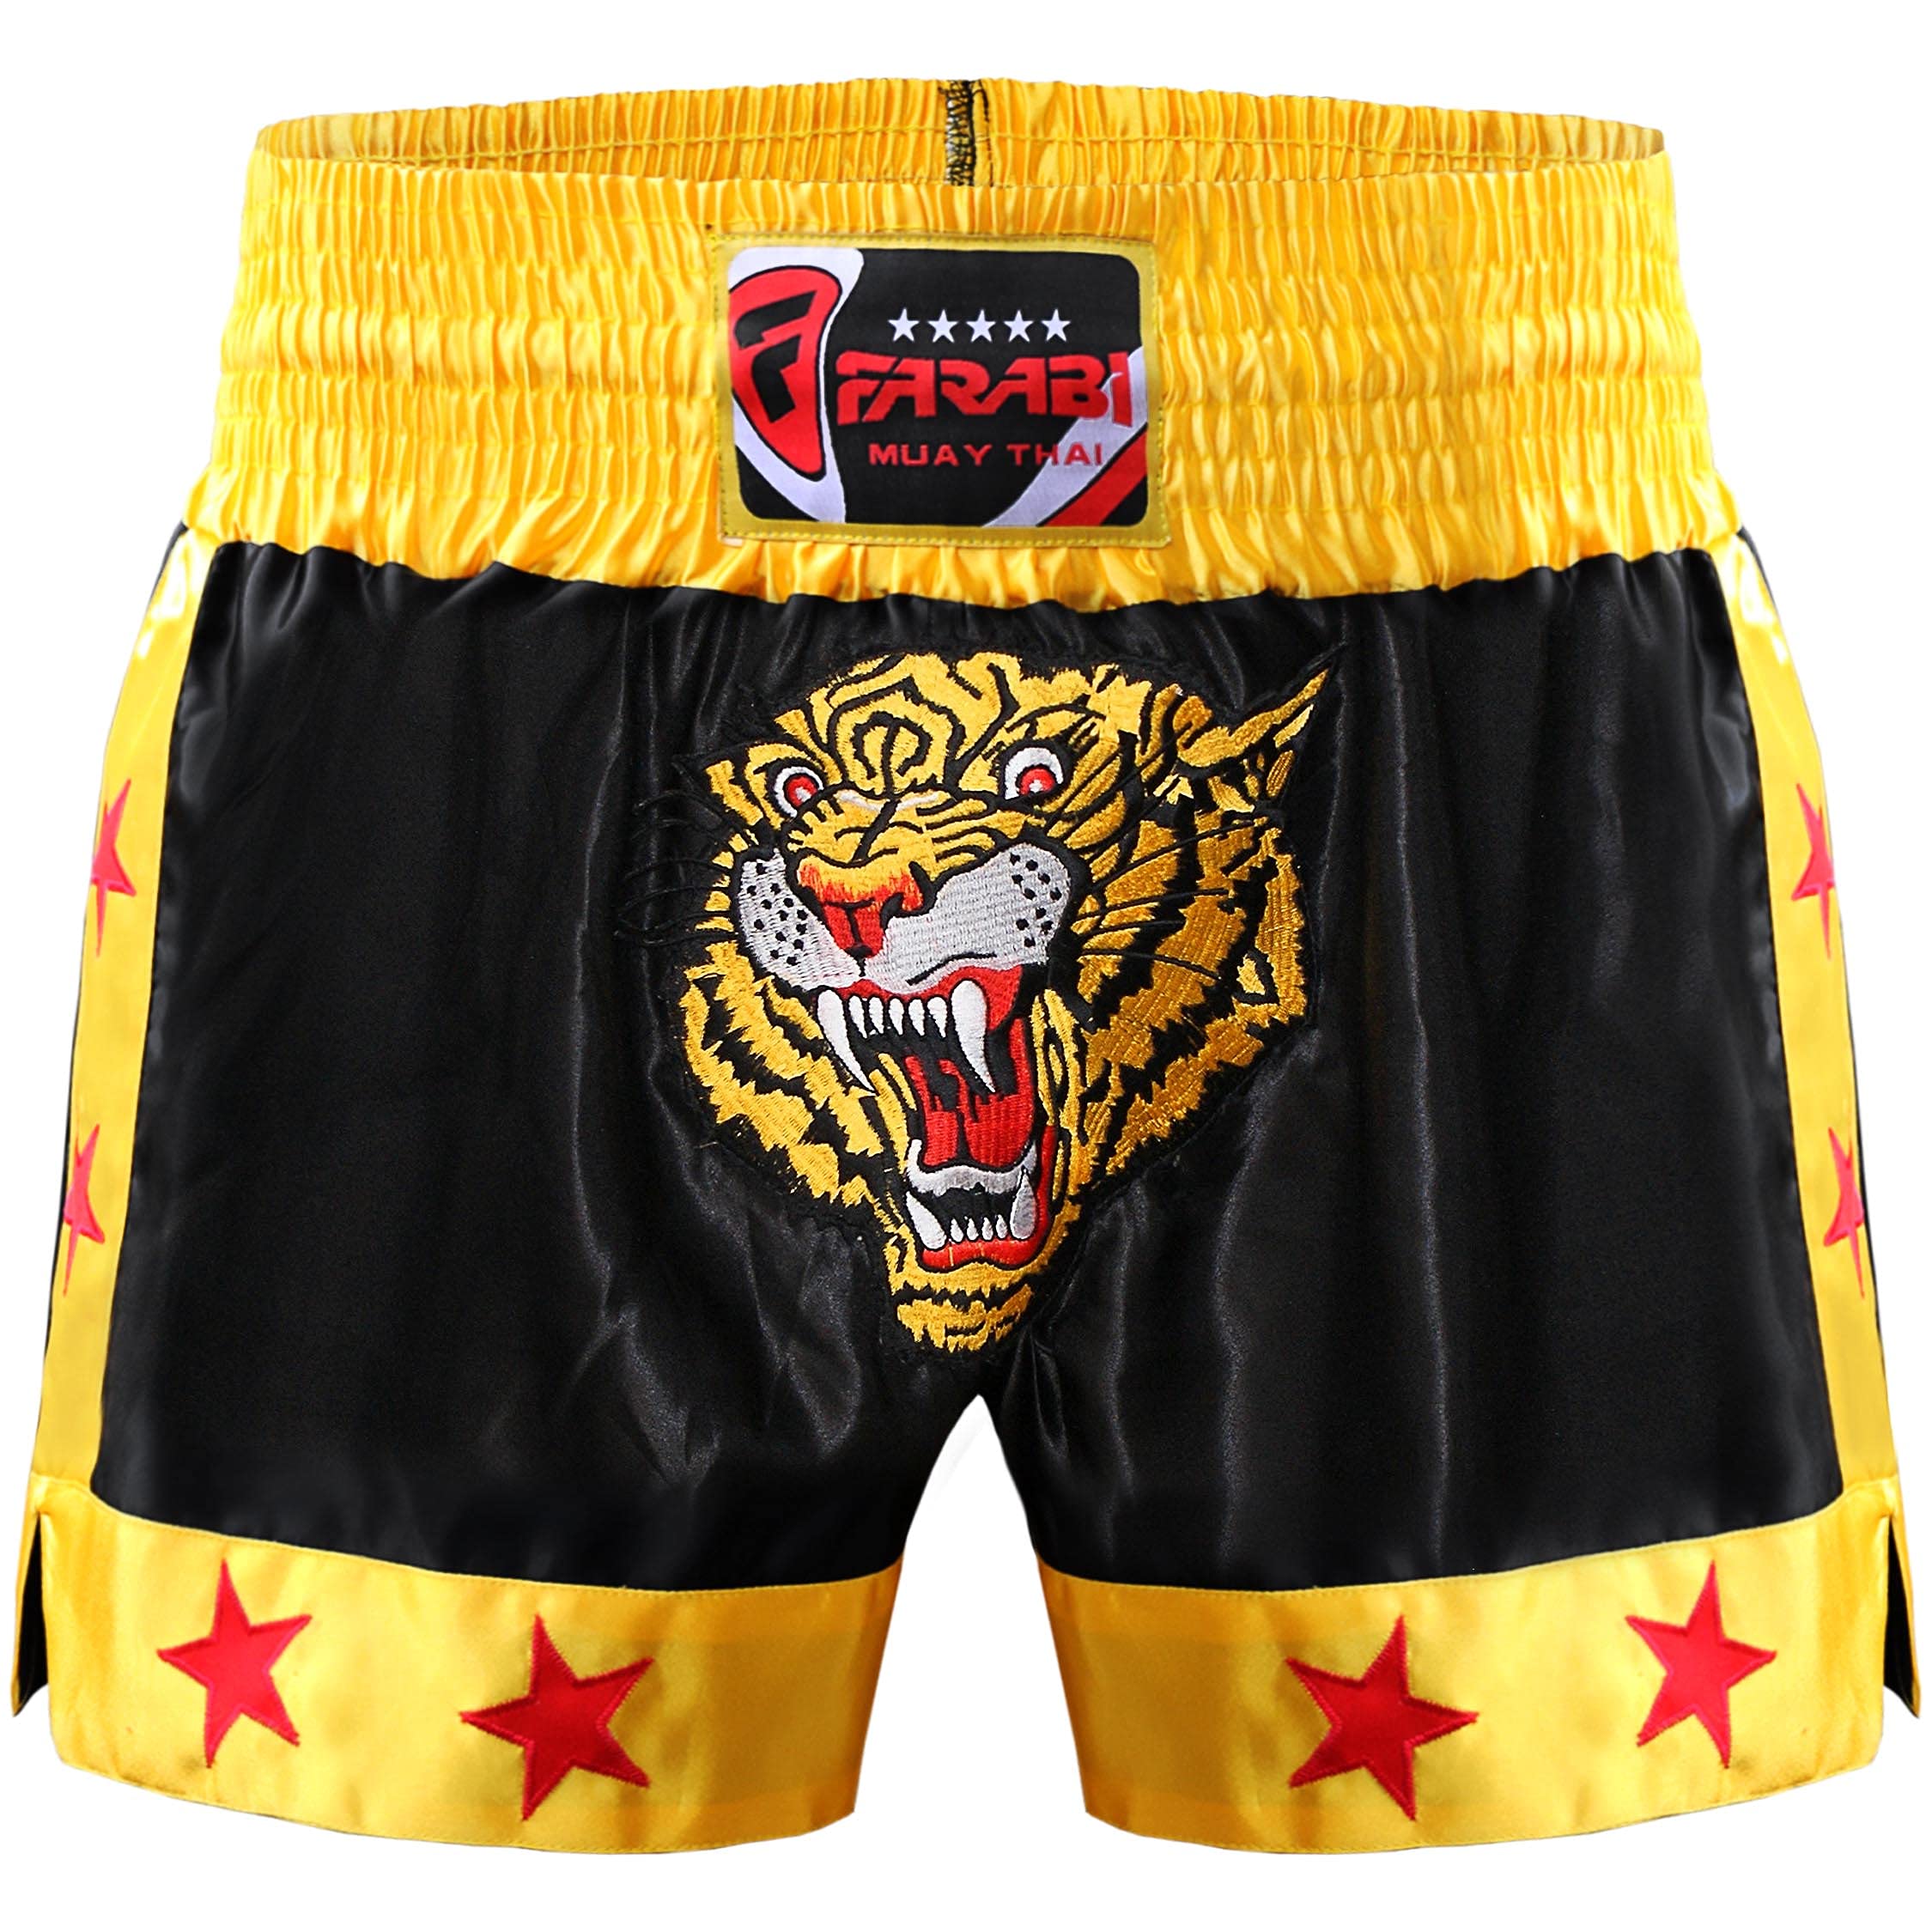 Farabi Sports Muay Thai Short Kickboxing Training Kampfsport Boxen Trunk (Black/Gold, S)